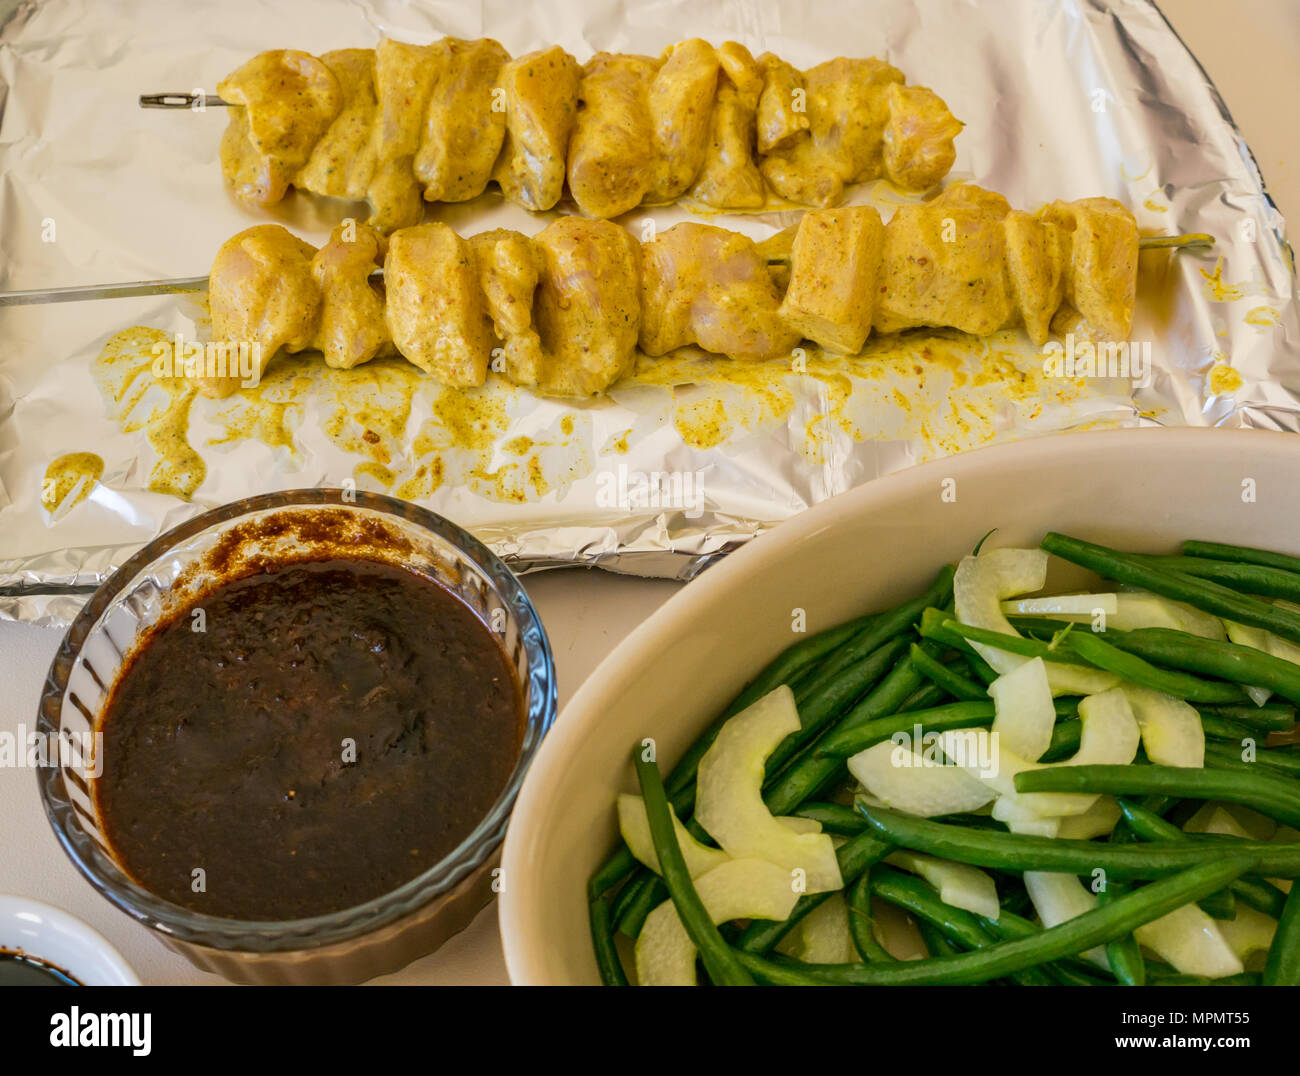 Indonesische Essen, für das Abendessen vorbereitet. Schiefe Hühnersaté auf vereitelt Fach, Erdnuß-Sauce, kecap masin Sauce und grüne Bohnen mit Gurkensalat Stockfoto